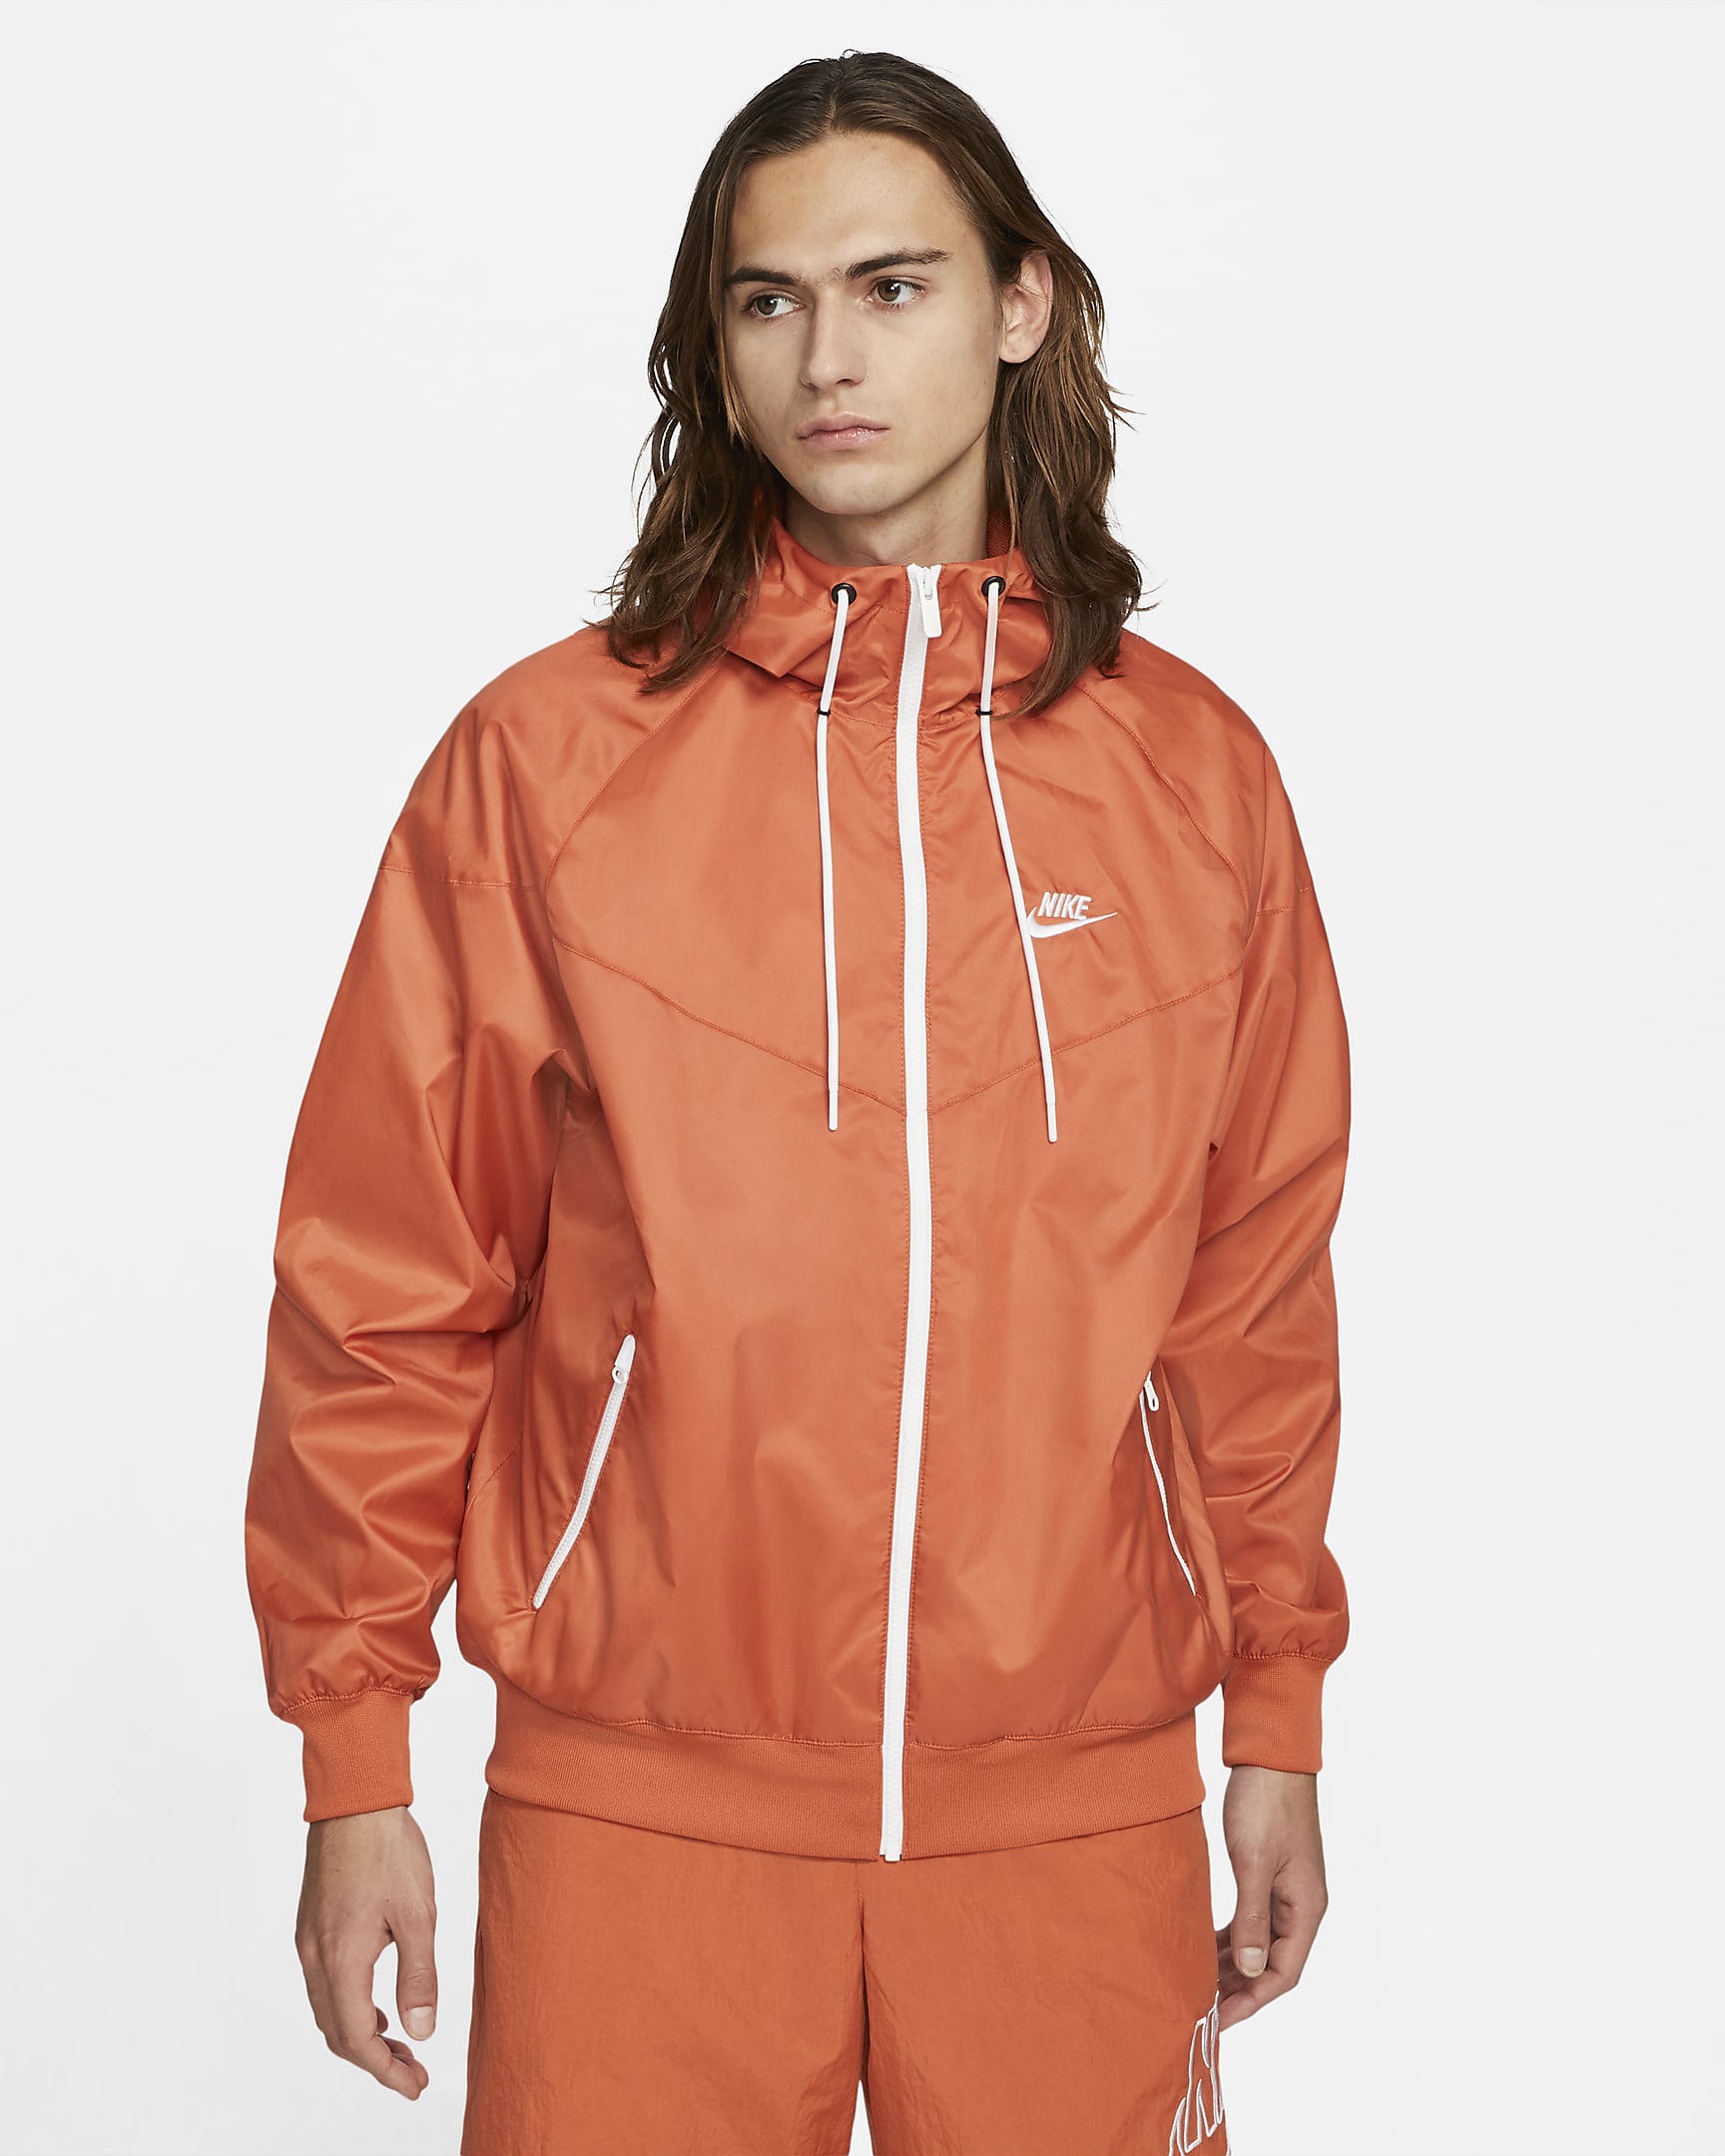 sportswear-windrunner-mens-hooded-jacket-5hK13x.png